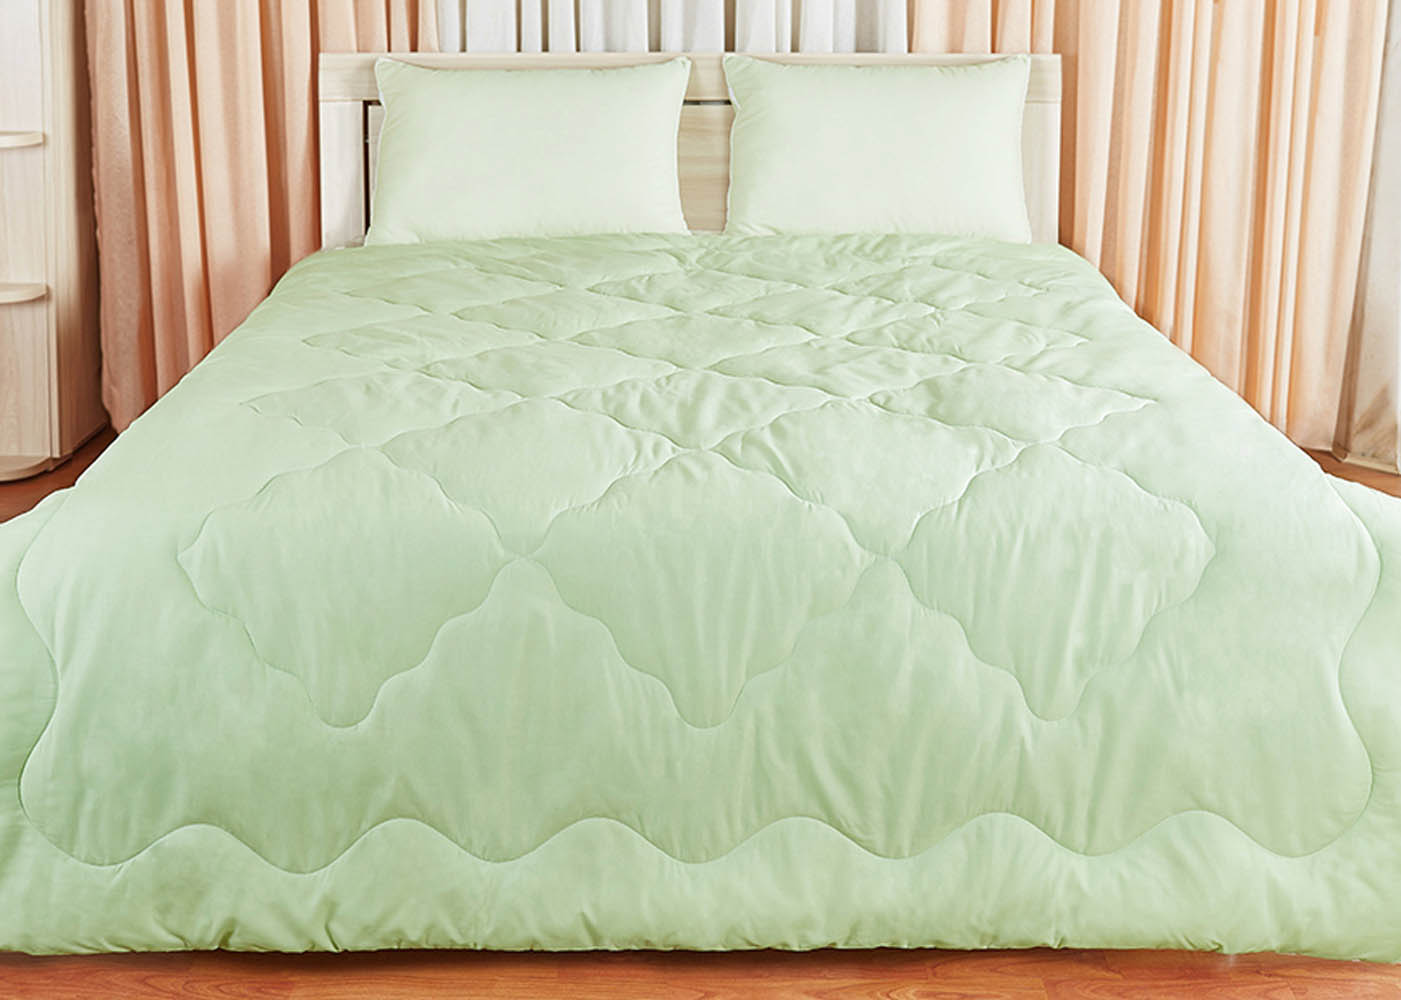 Одеяло JustSleep Лежебока,140х205 см, Экофайбер, цвет салатовый